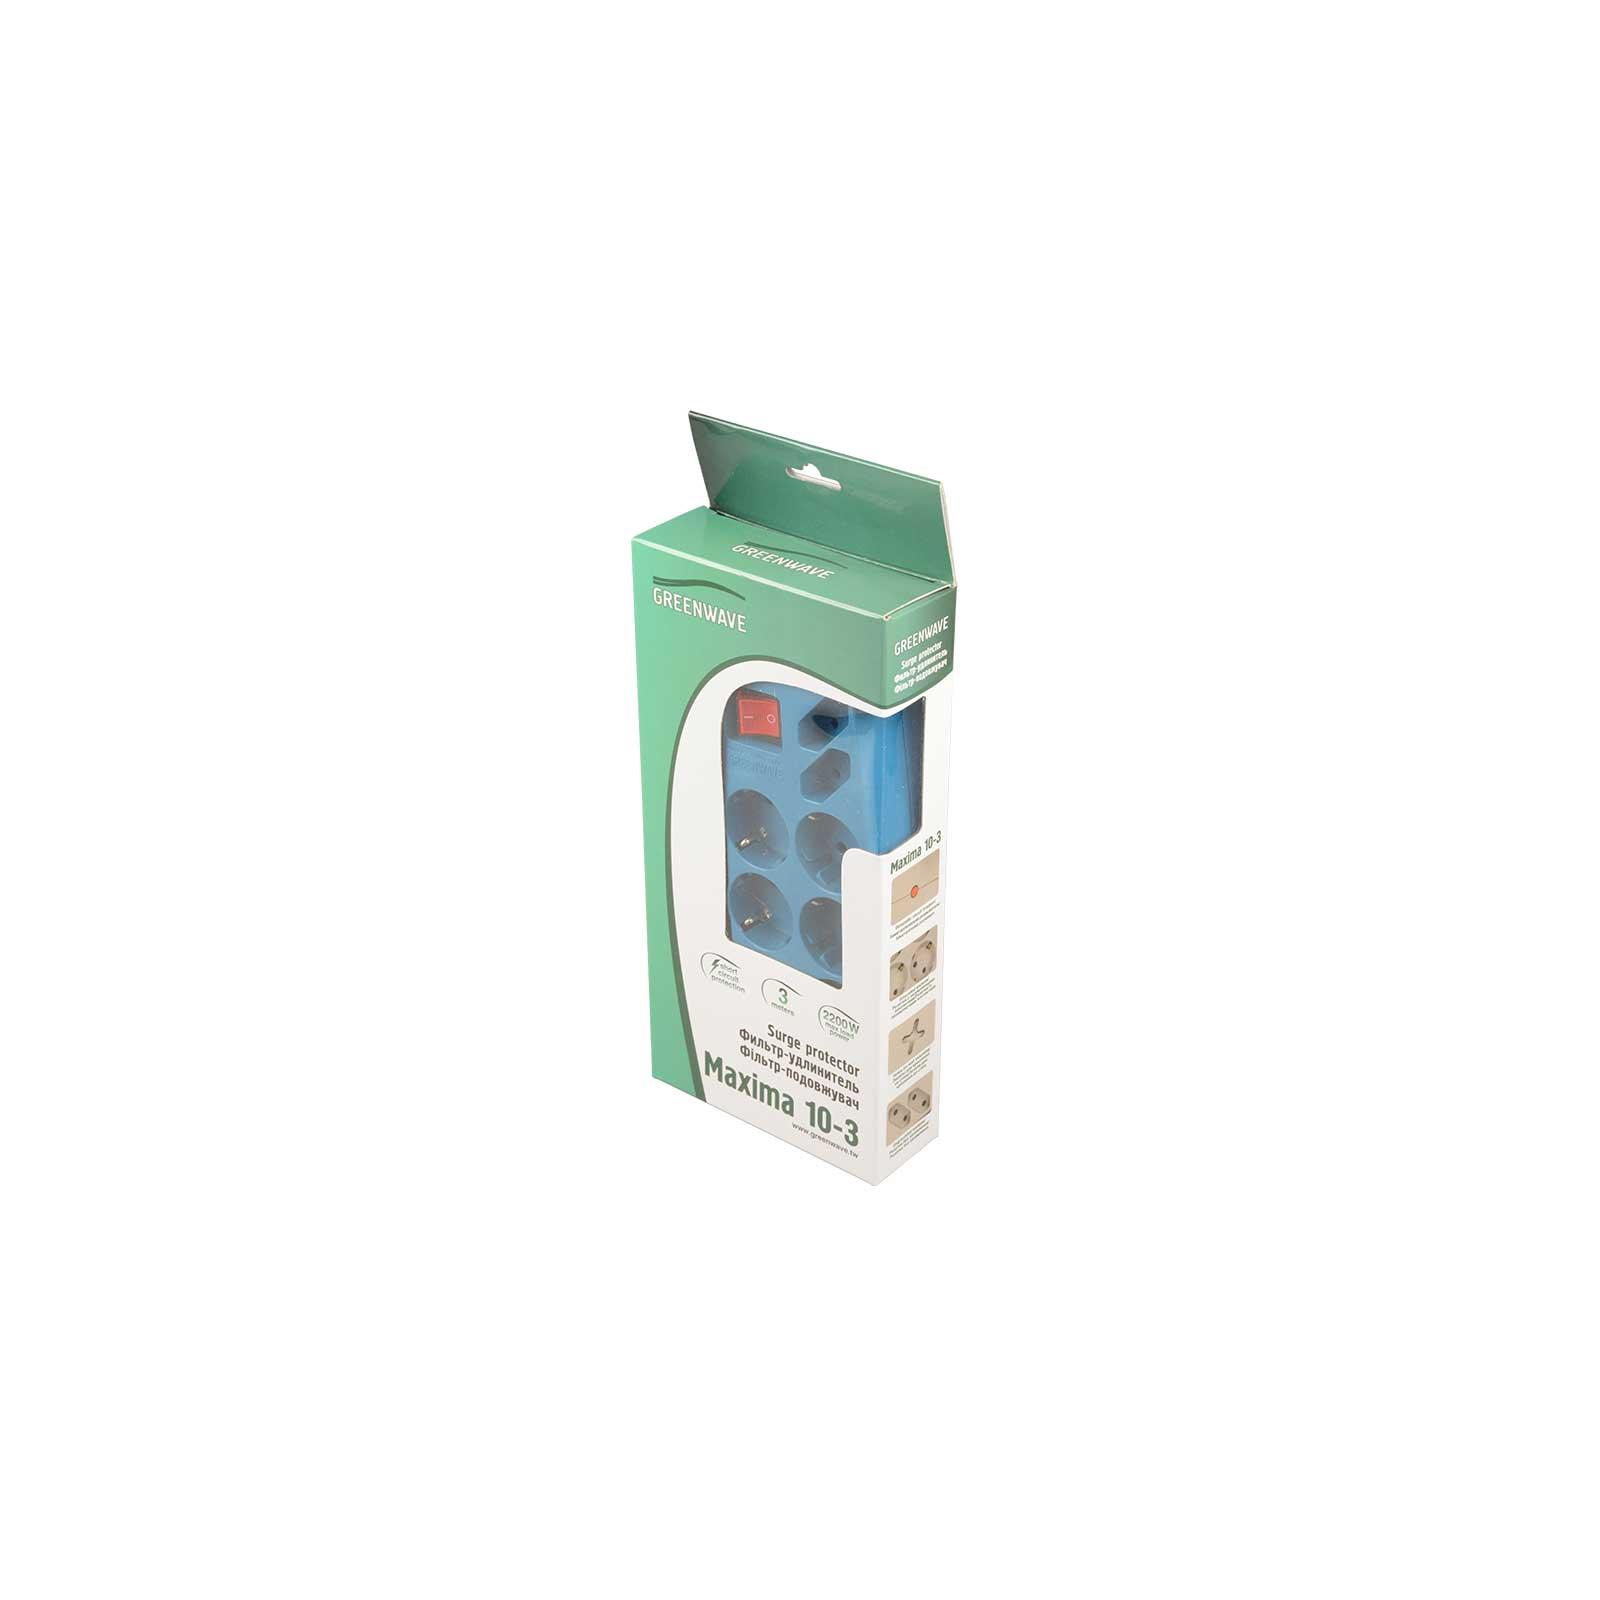 Сетевой фильтр питания Greenwave Maxima 10-3, aquamarine (R0013738) изображение 6